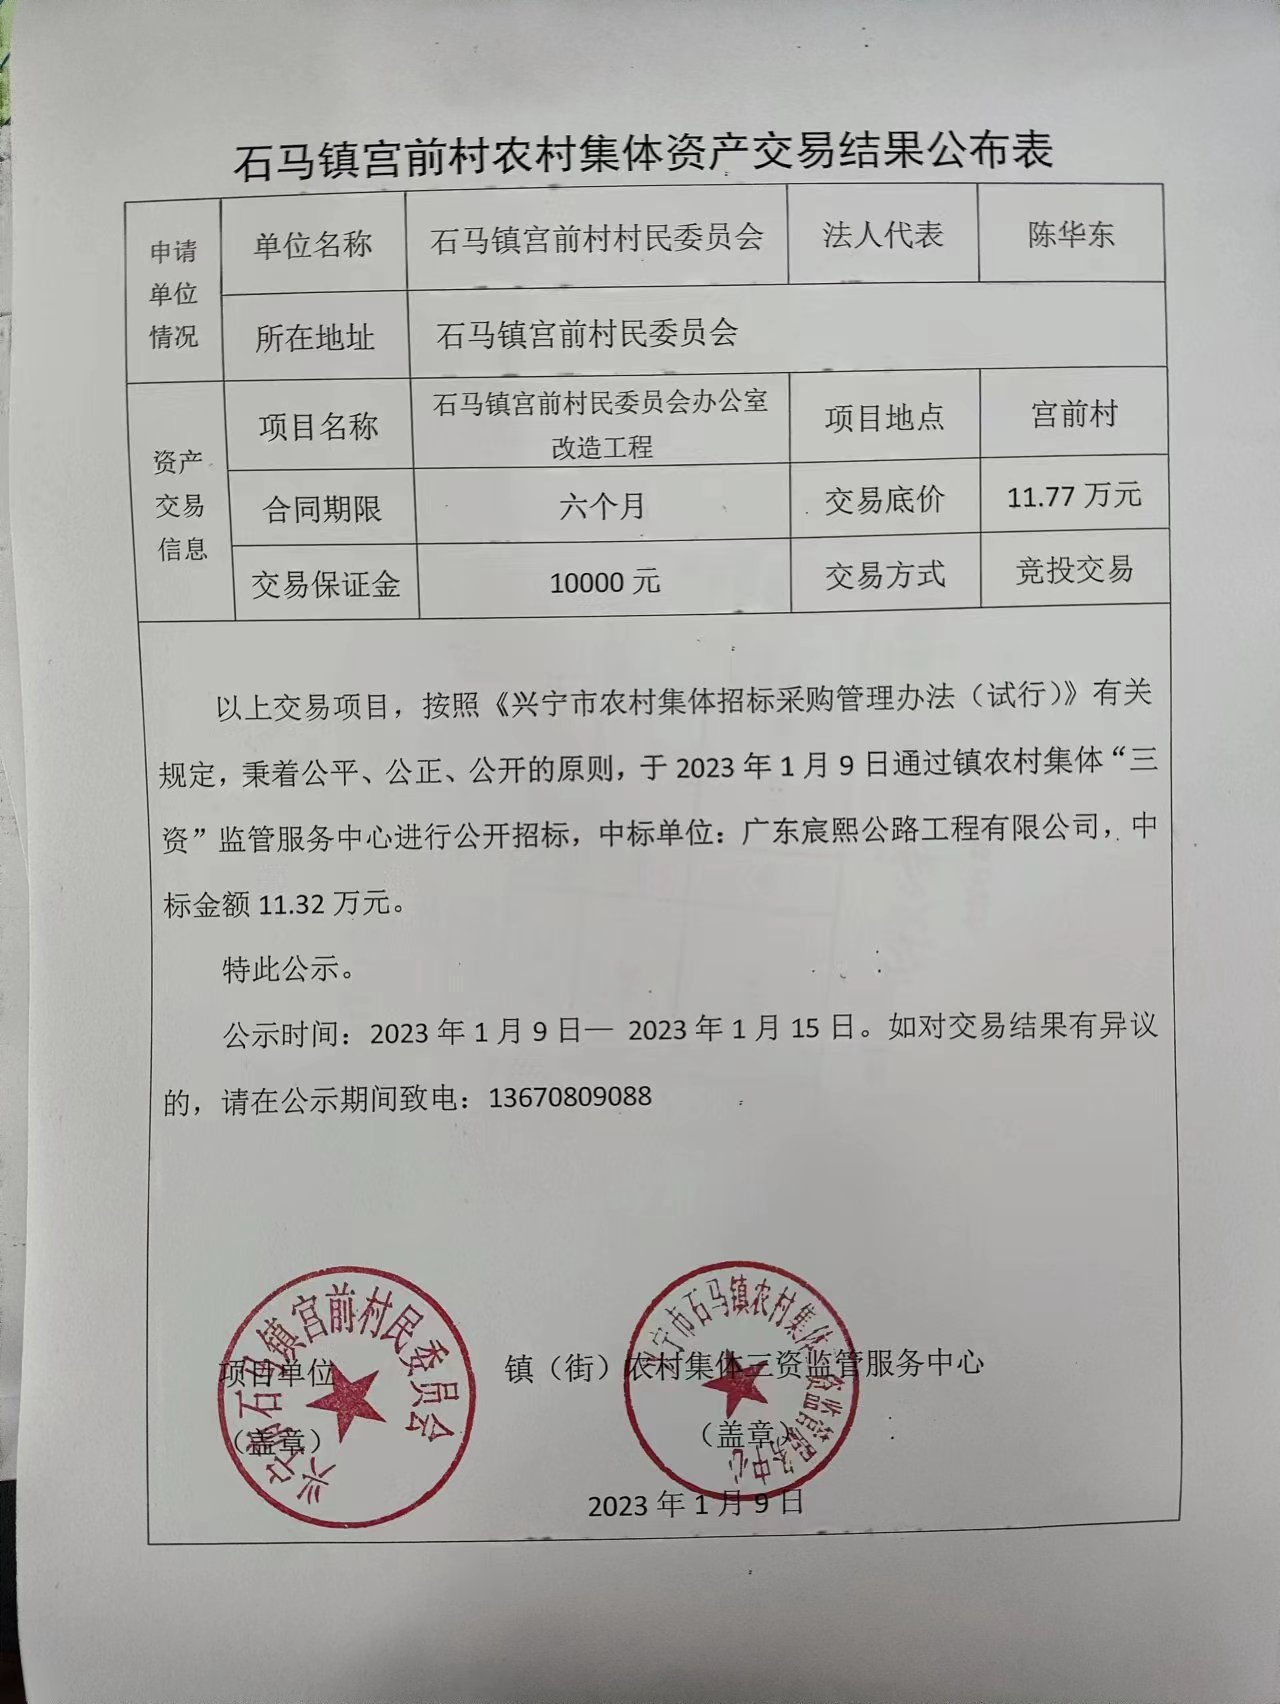 石马镇宫前村农村集体资产交易结果公布表2023.01.09.jpg